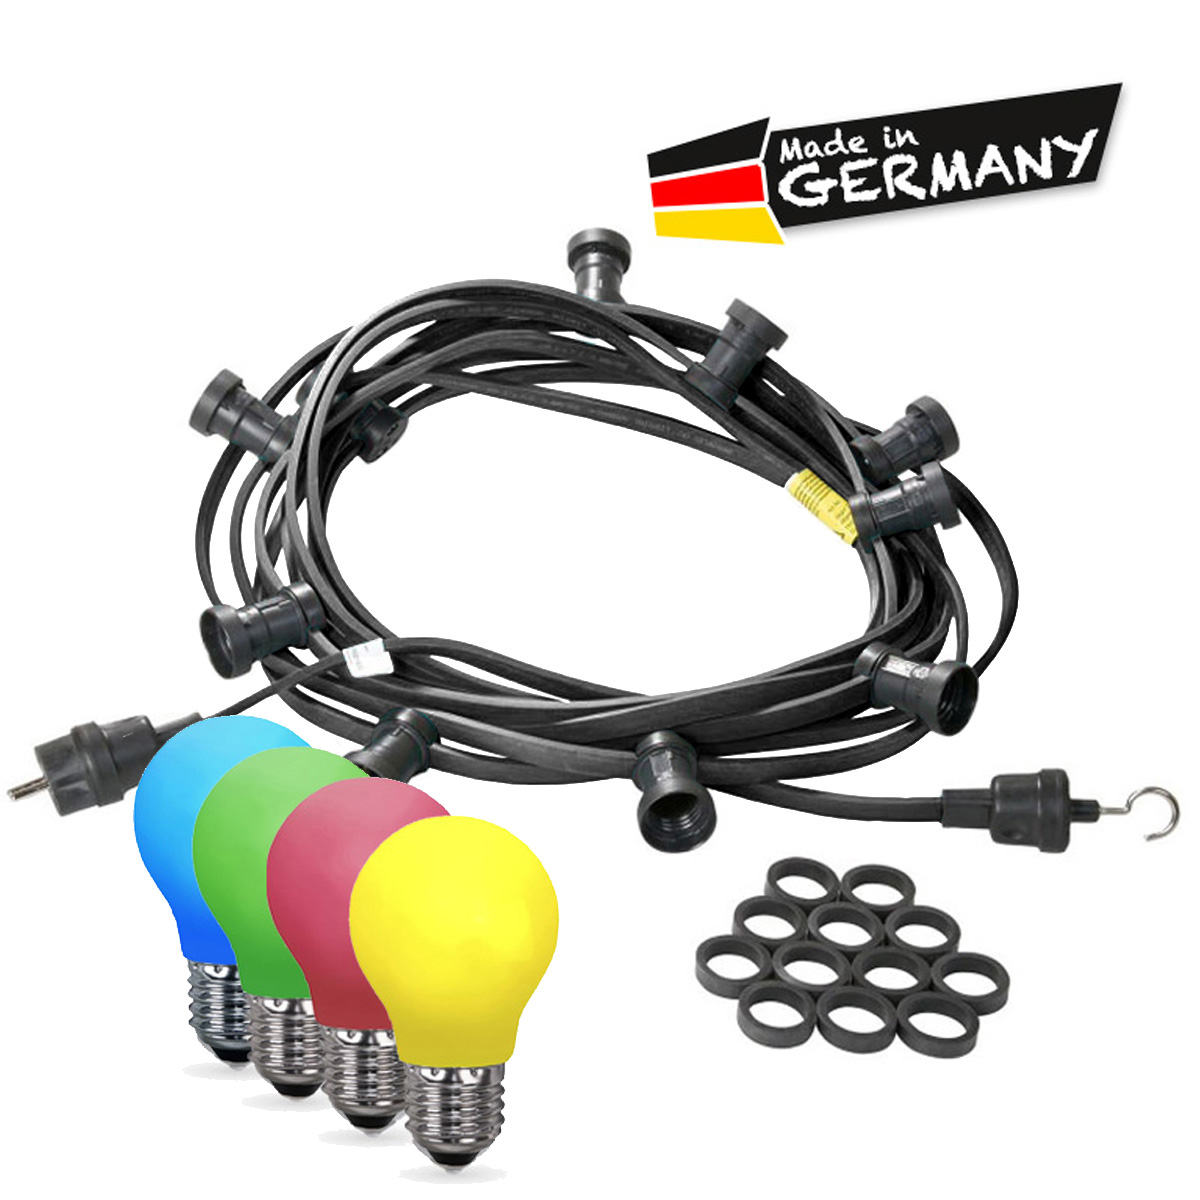 Illu-/Partylichterkette 5m - Außenlichterkette - Made in Germany - 5 x bunte LED Tropfenlampe